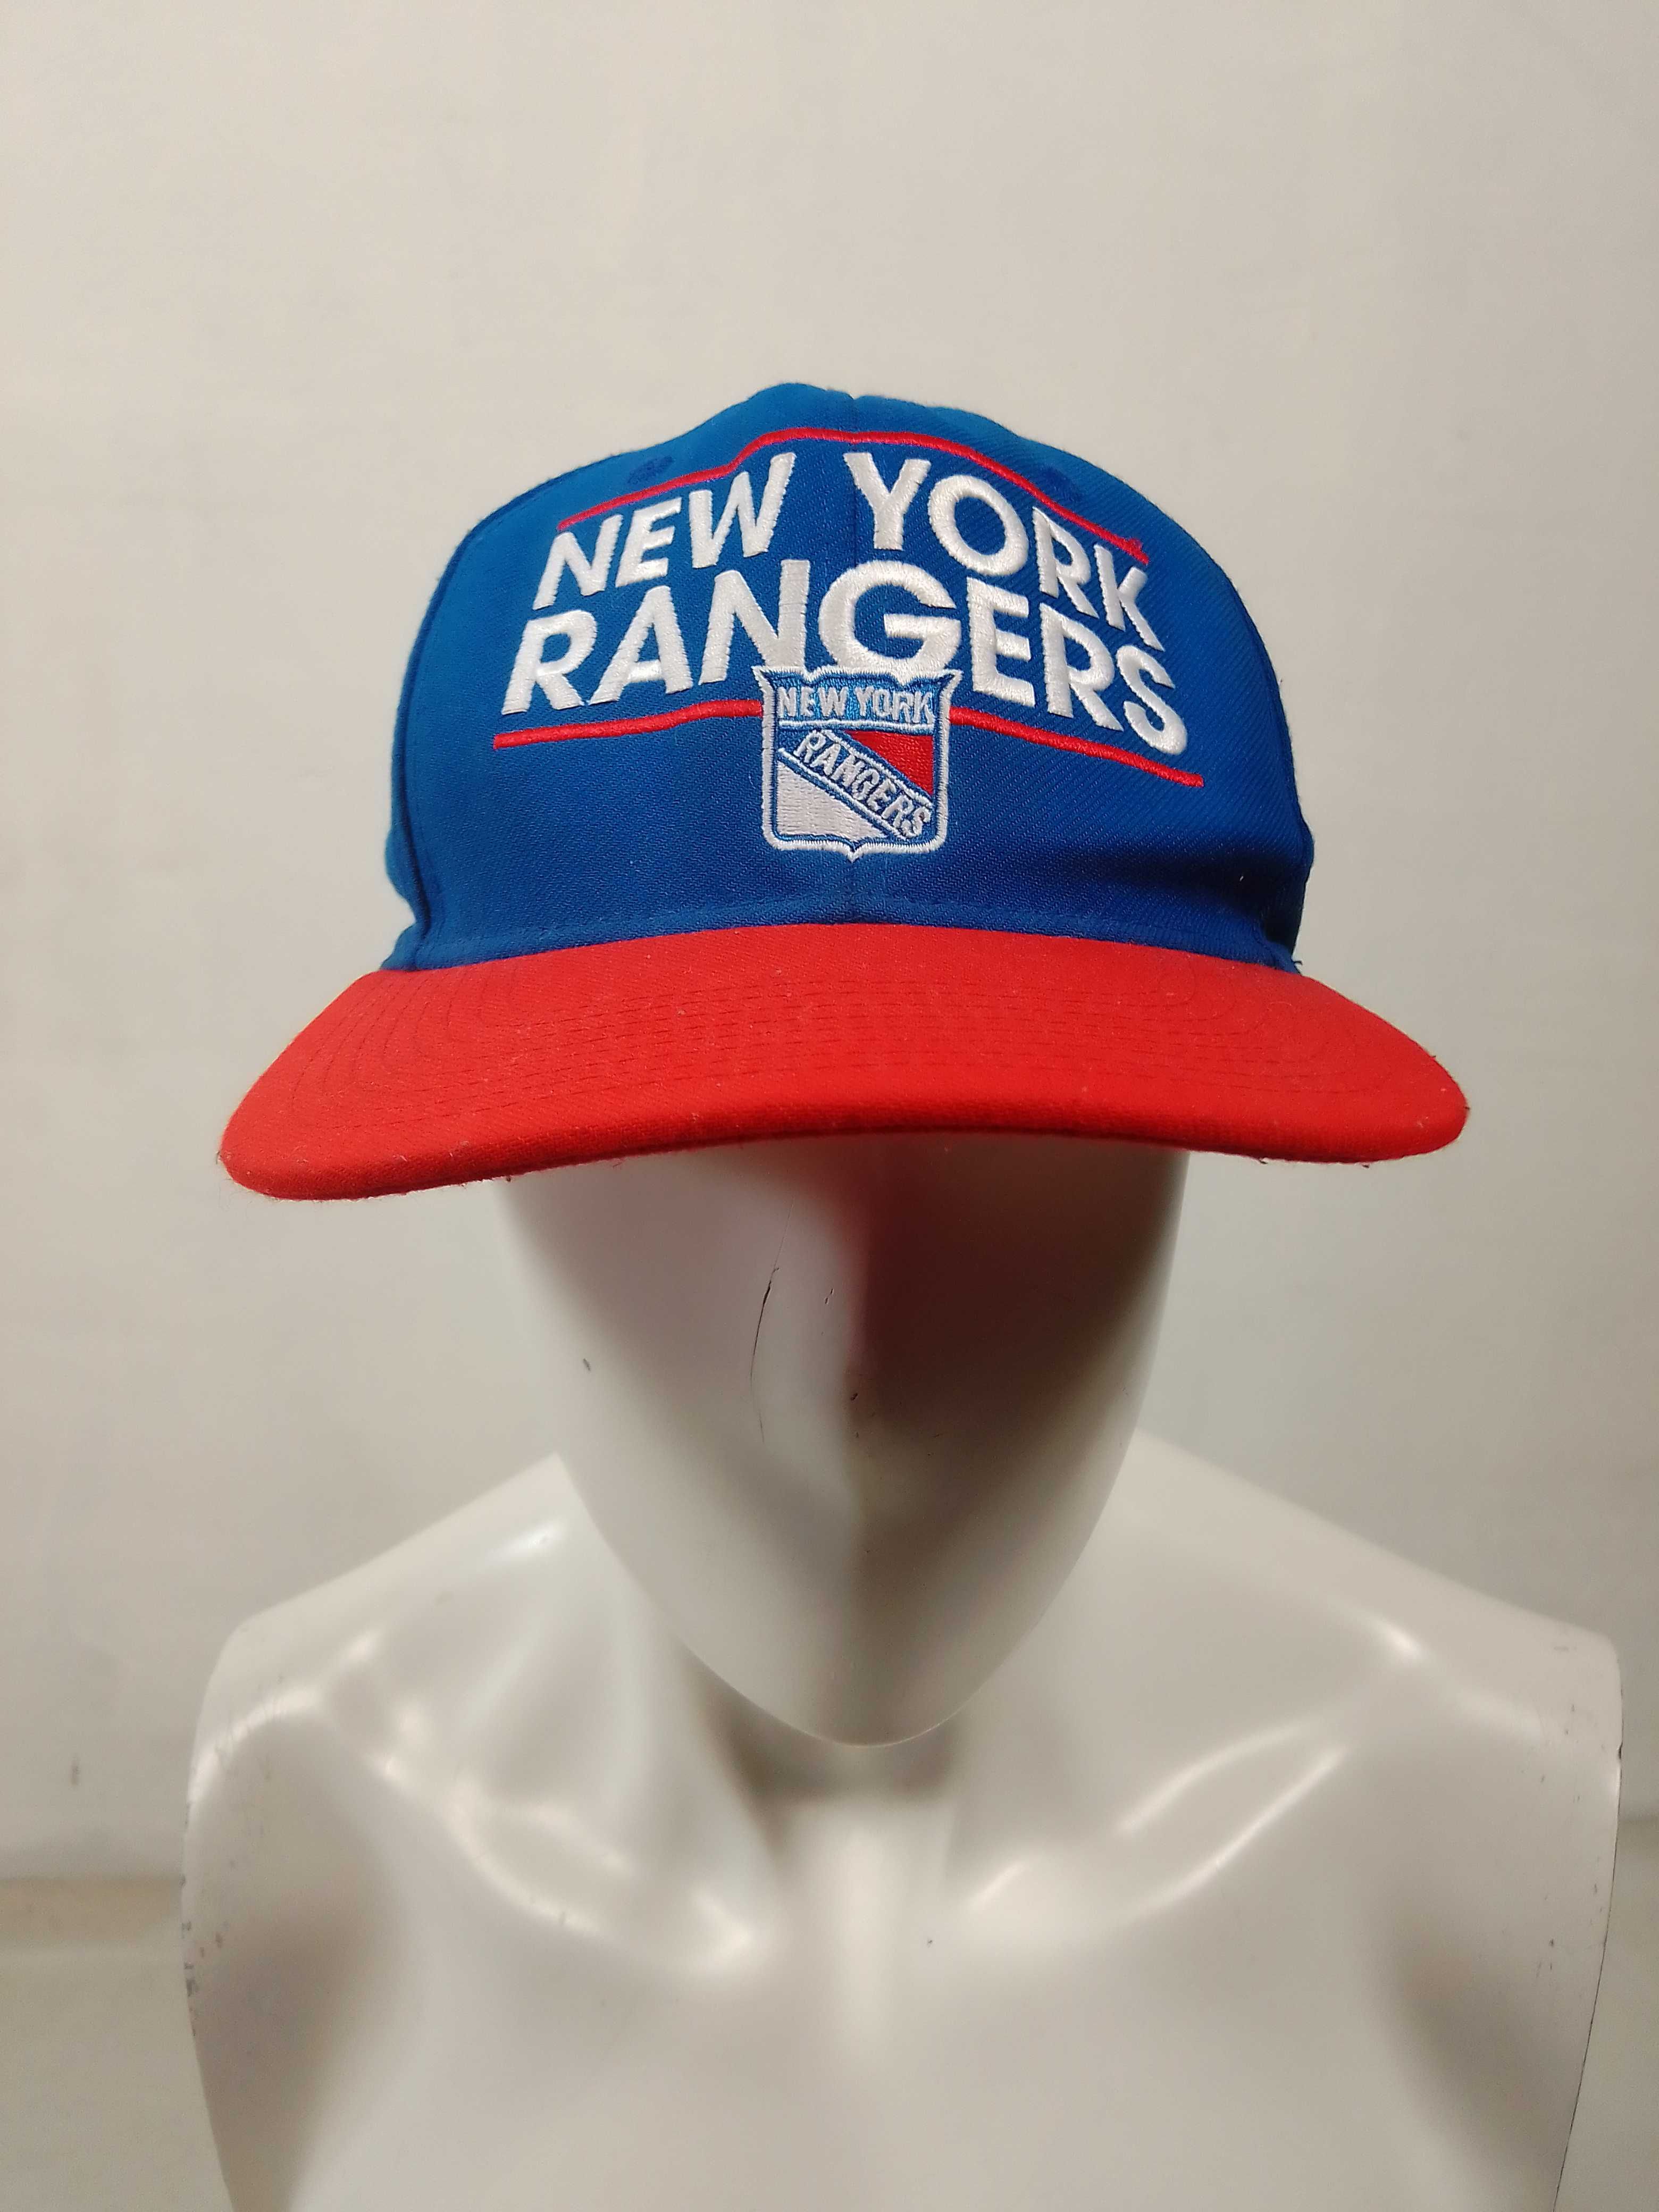 Adidas New York Rangers kaszkiet czapka z daszkiem